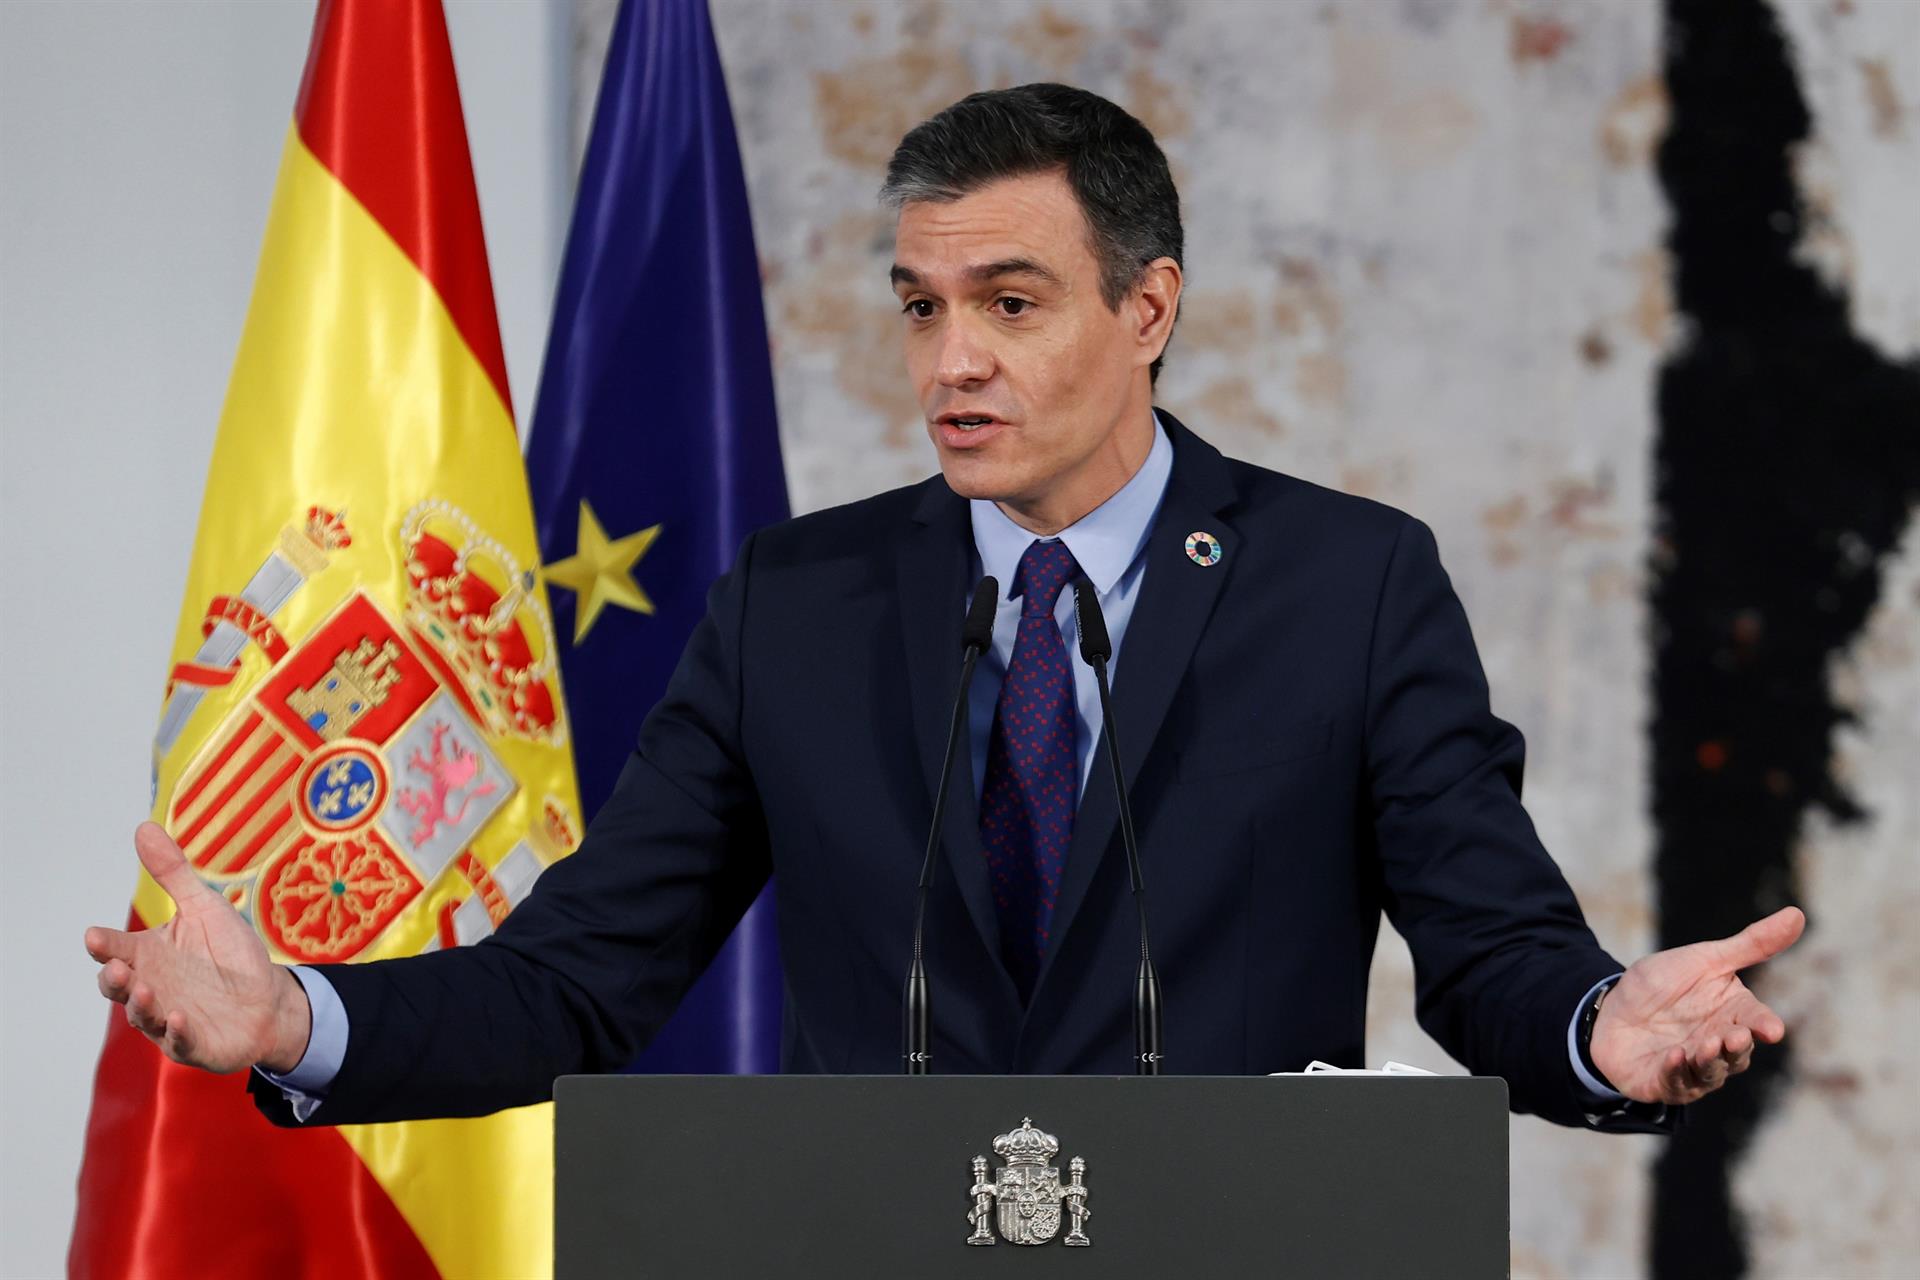 Pedro Sánchez promete “firmeza” para restablecer la normalidad en Ceuta